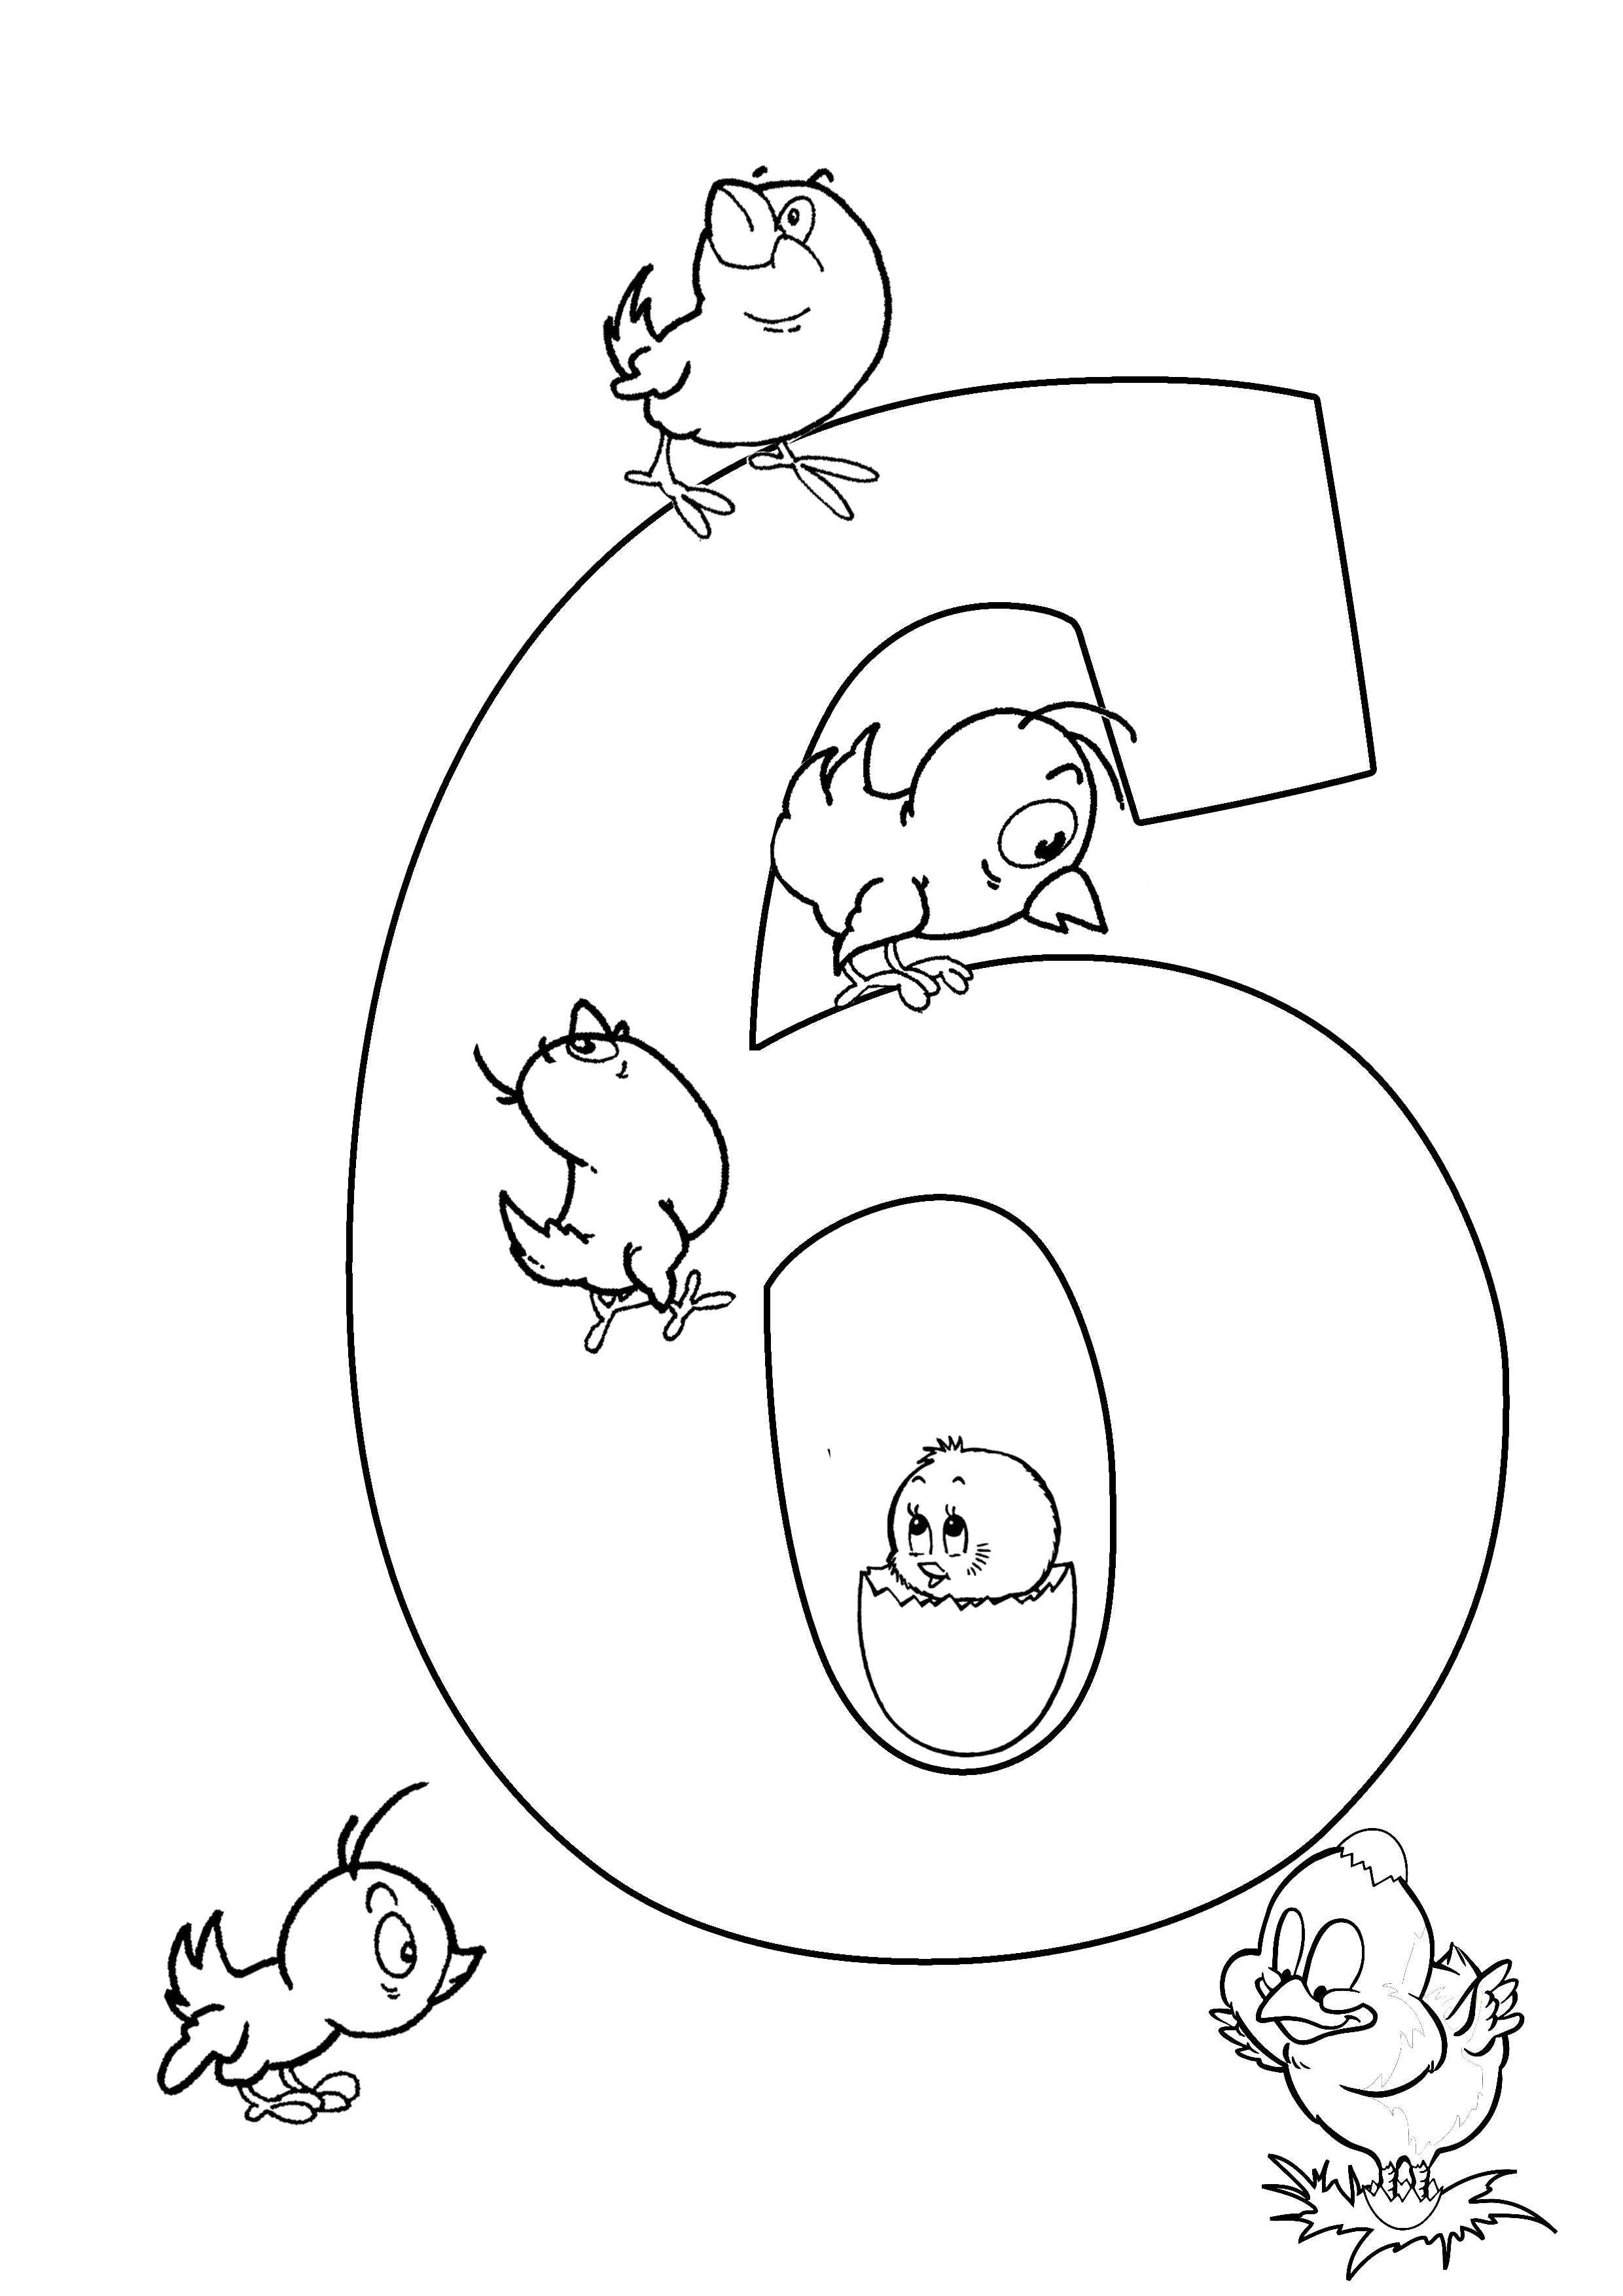 Раскраска Веселый счет шесть птичек. Скачать с цифрами.  Распечатать с цифрами